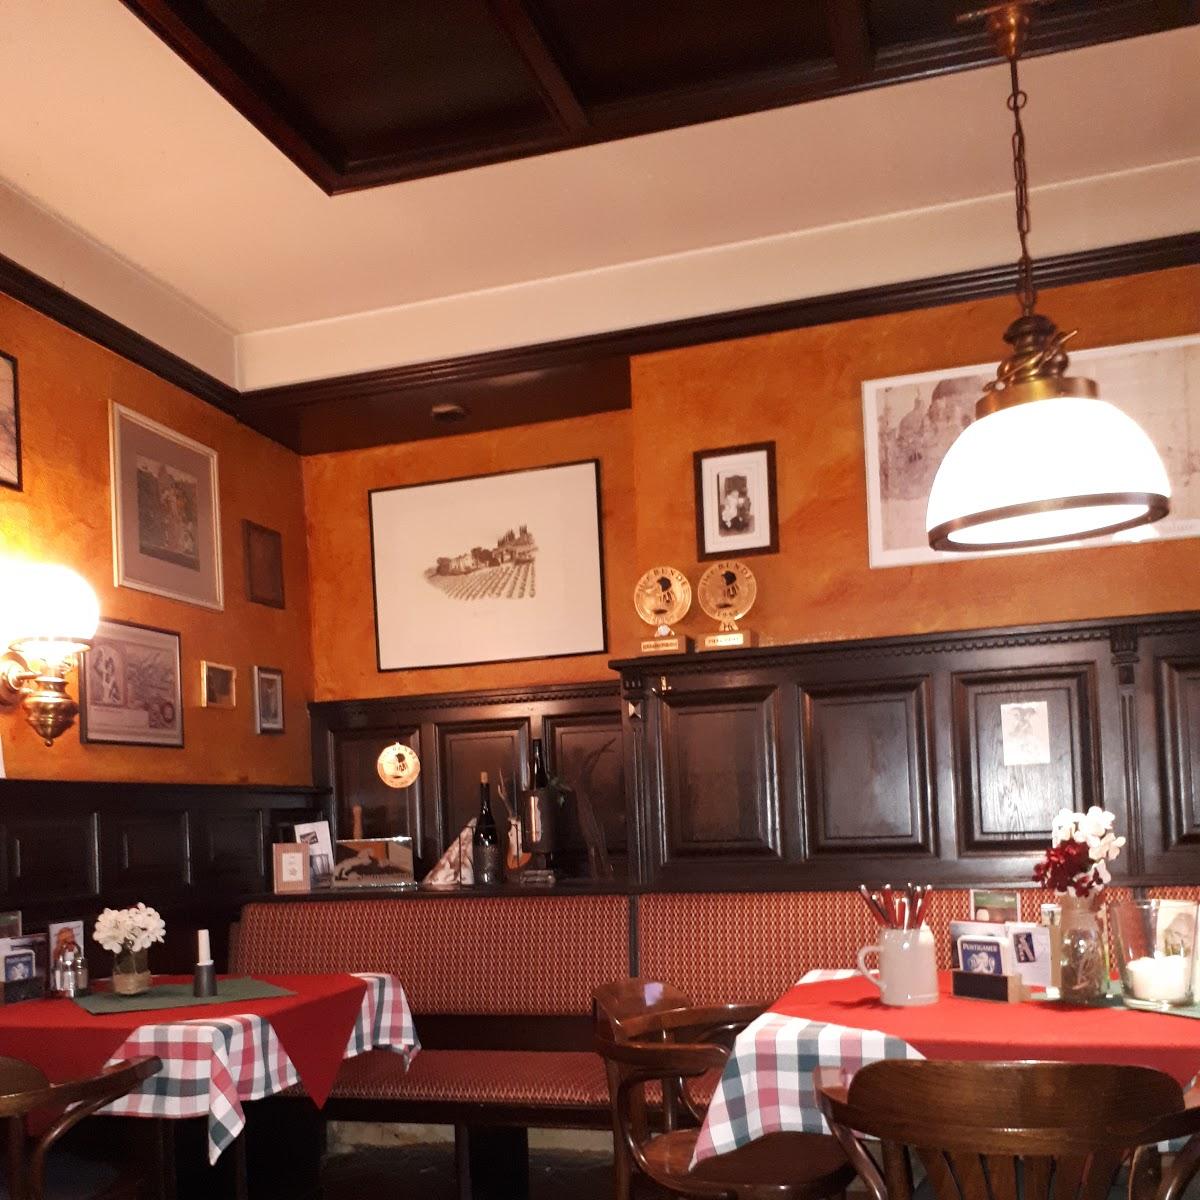 Restaurant "Wirtshaus Hofer" in Perg